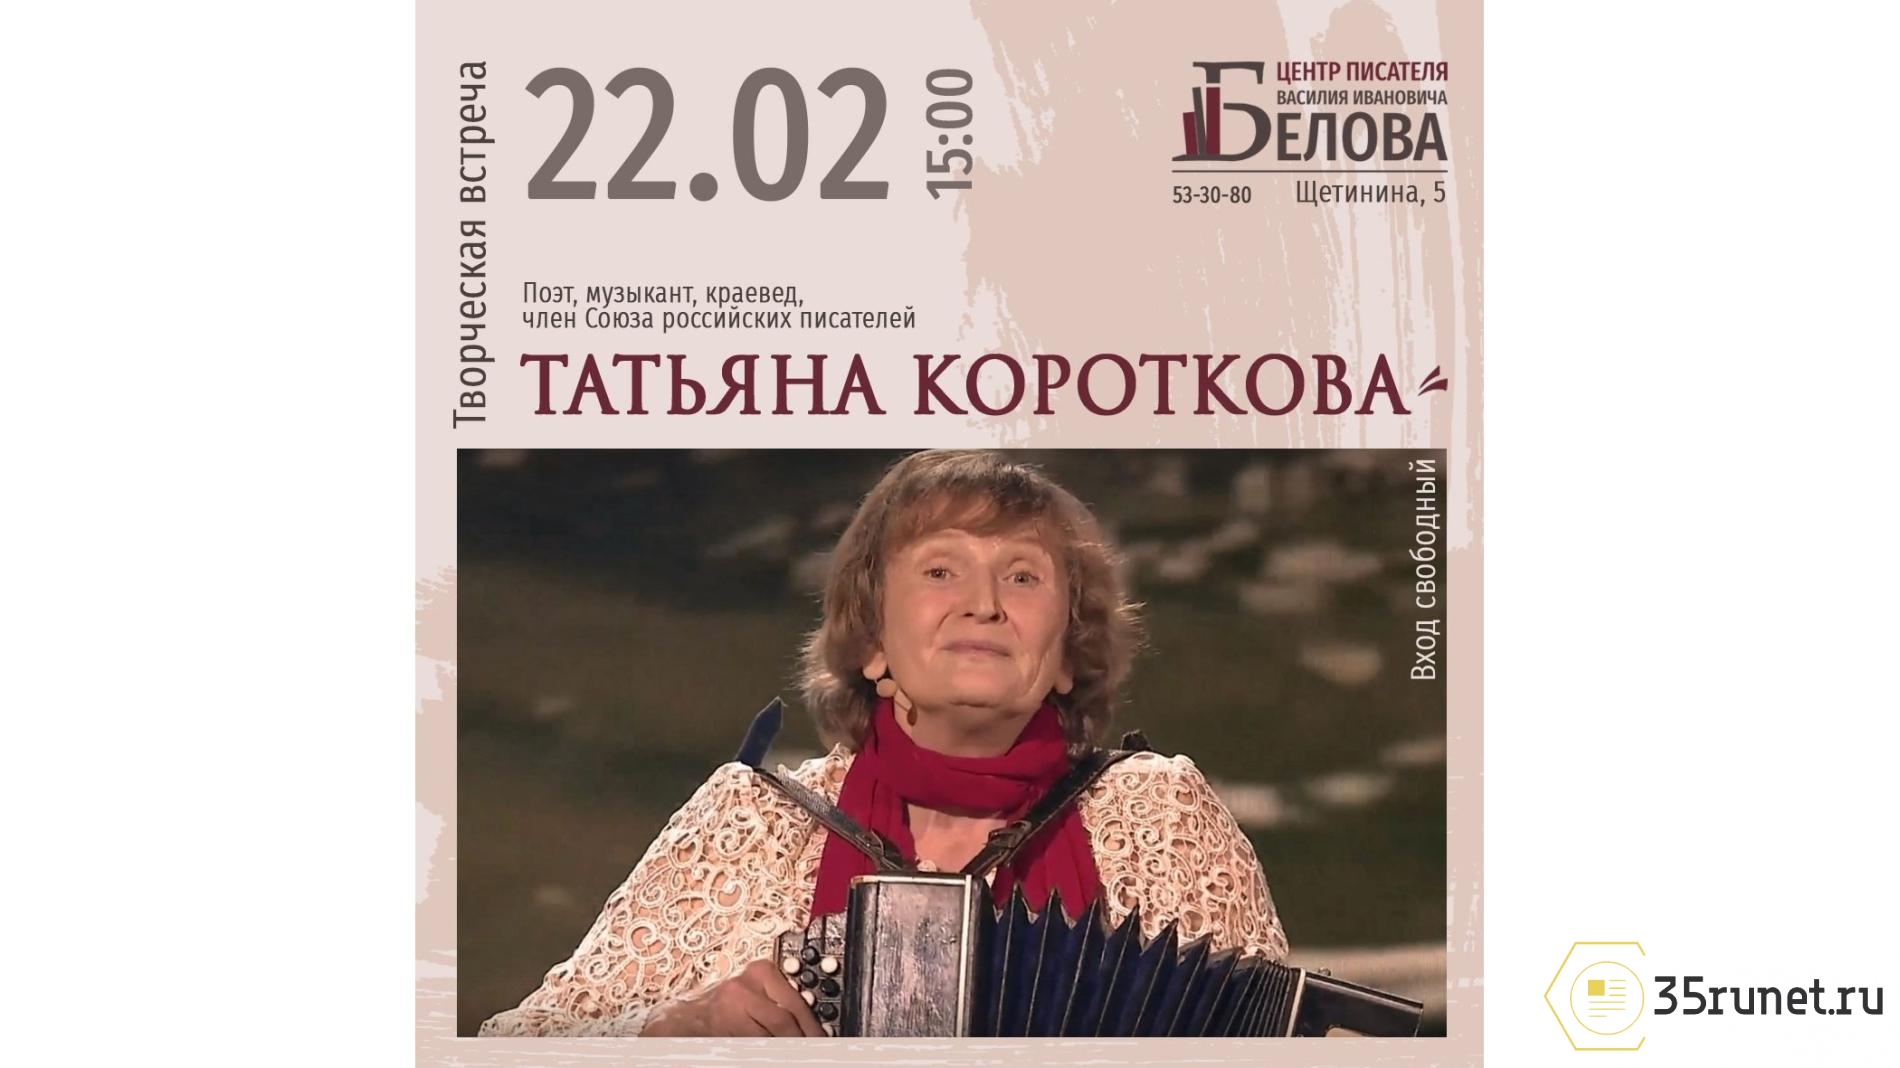 В Вологде состоится творческая встреча с поэтессой и музыкантом Татьяной Коротковой